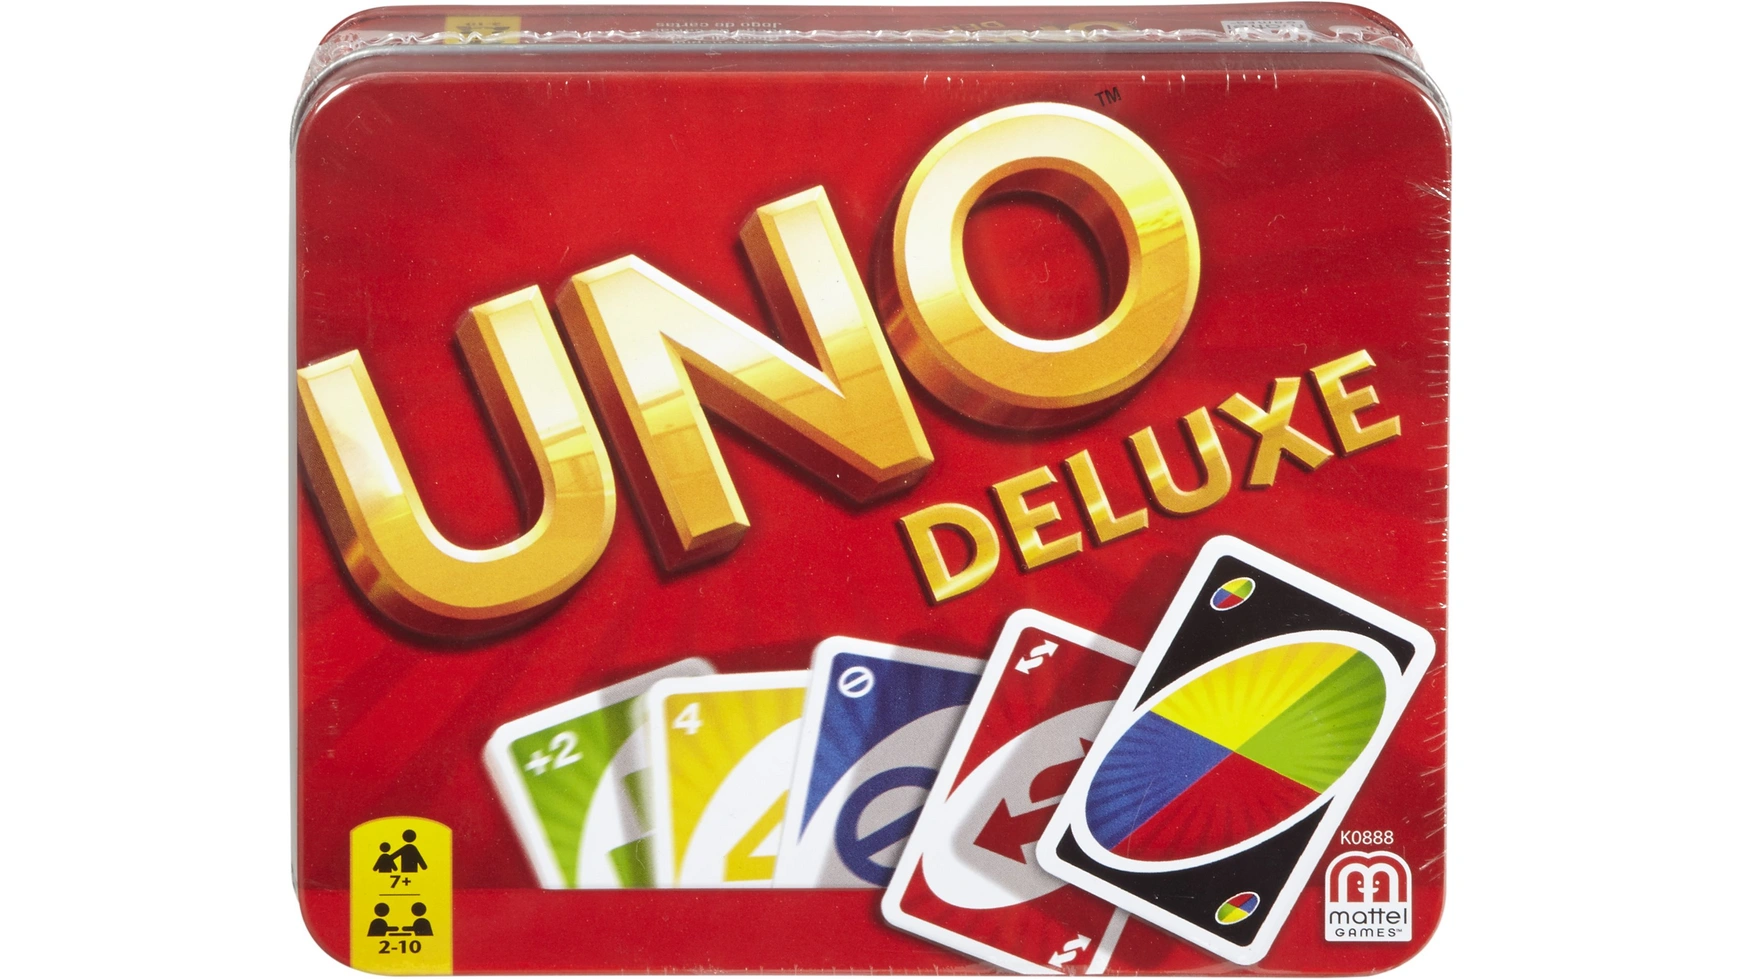 Металлическая коробка Mattel Games UNO Deluxe, карточная игра, настольная игра, детская игра настольная игра uno карточная игра dos mattel